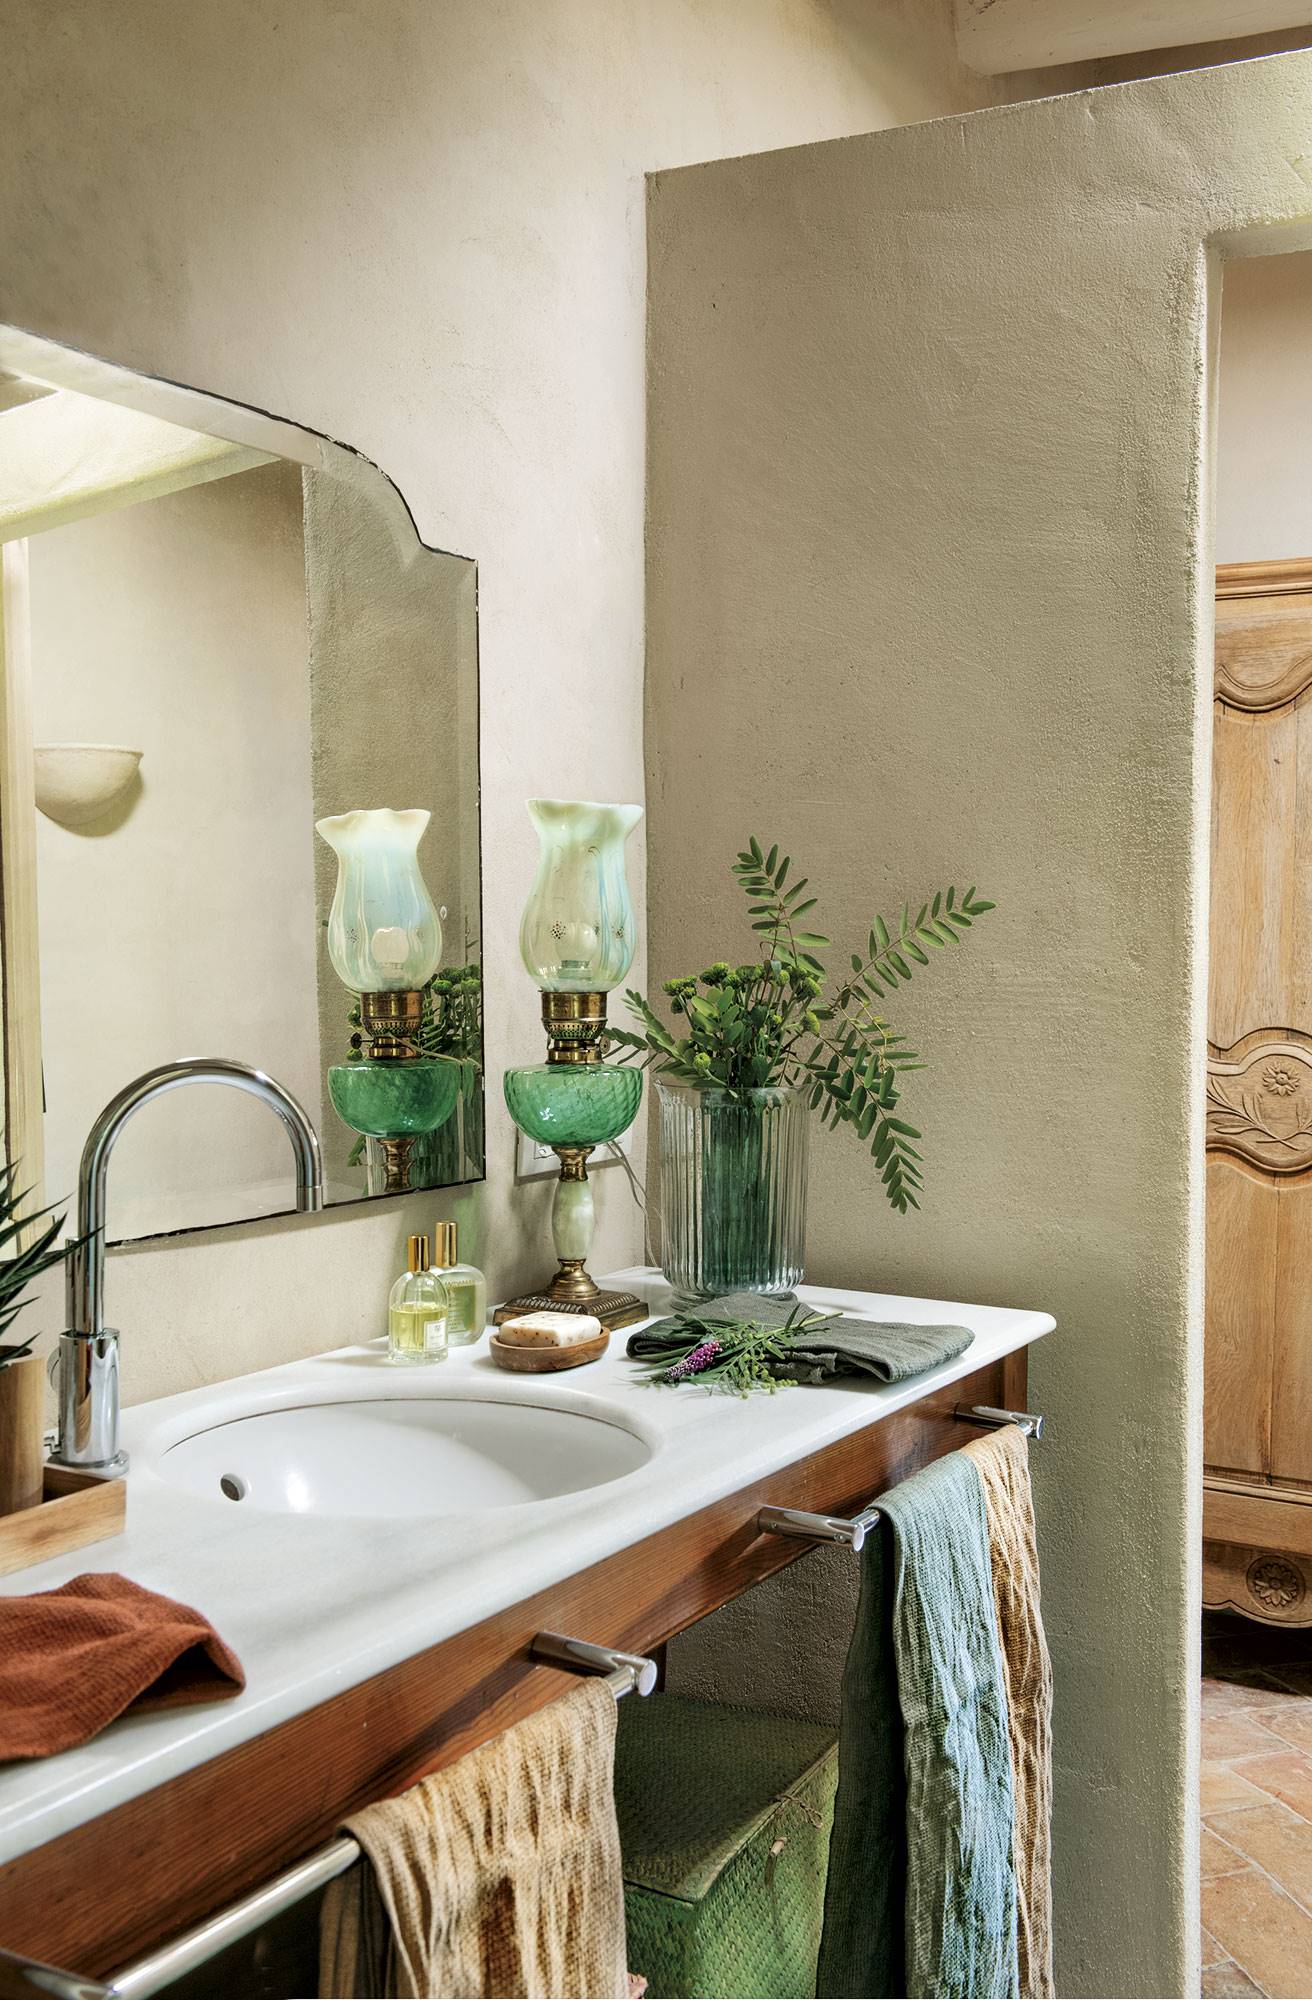 Baño con mueble de madera, lavamanos de mármol, espejo antiguo y vestidor